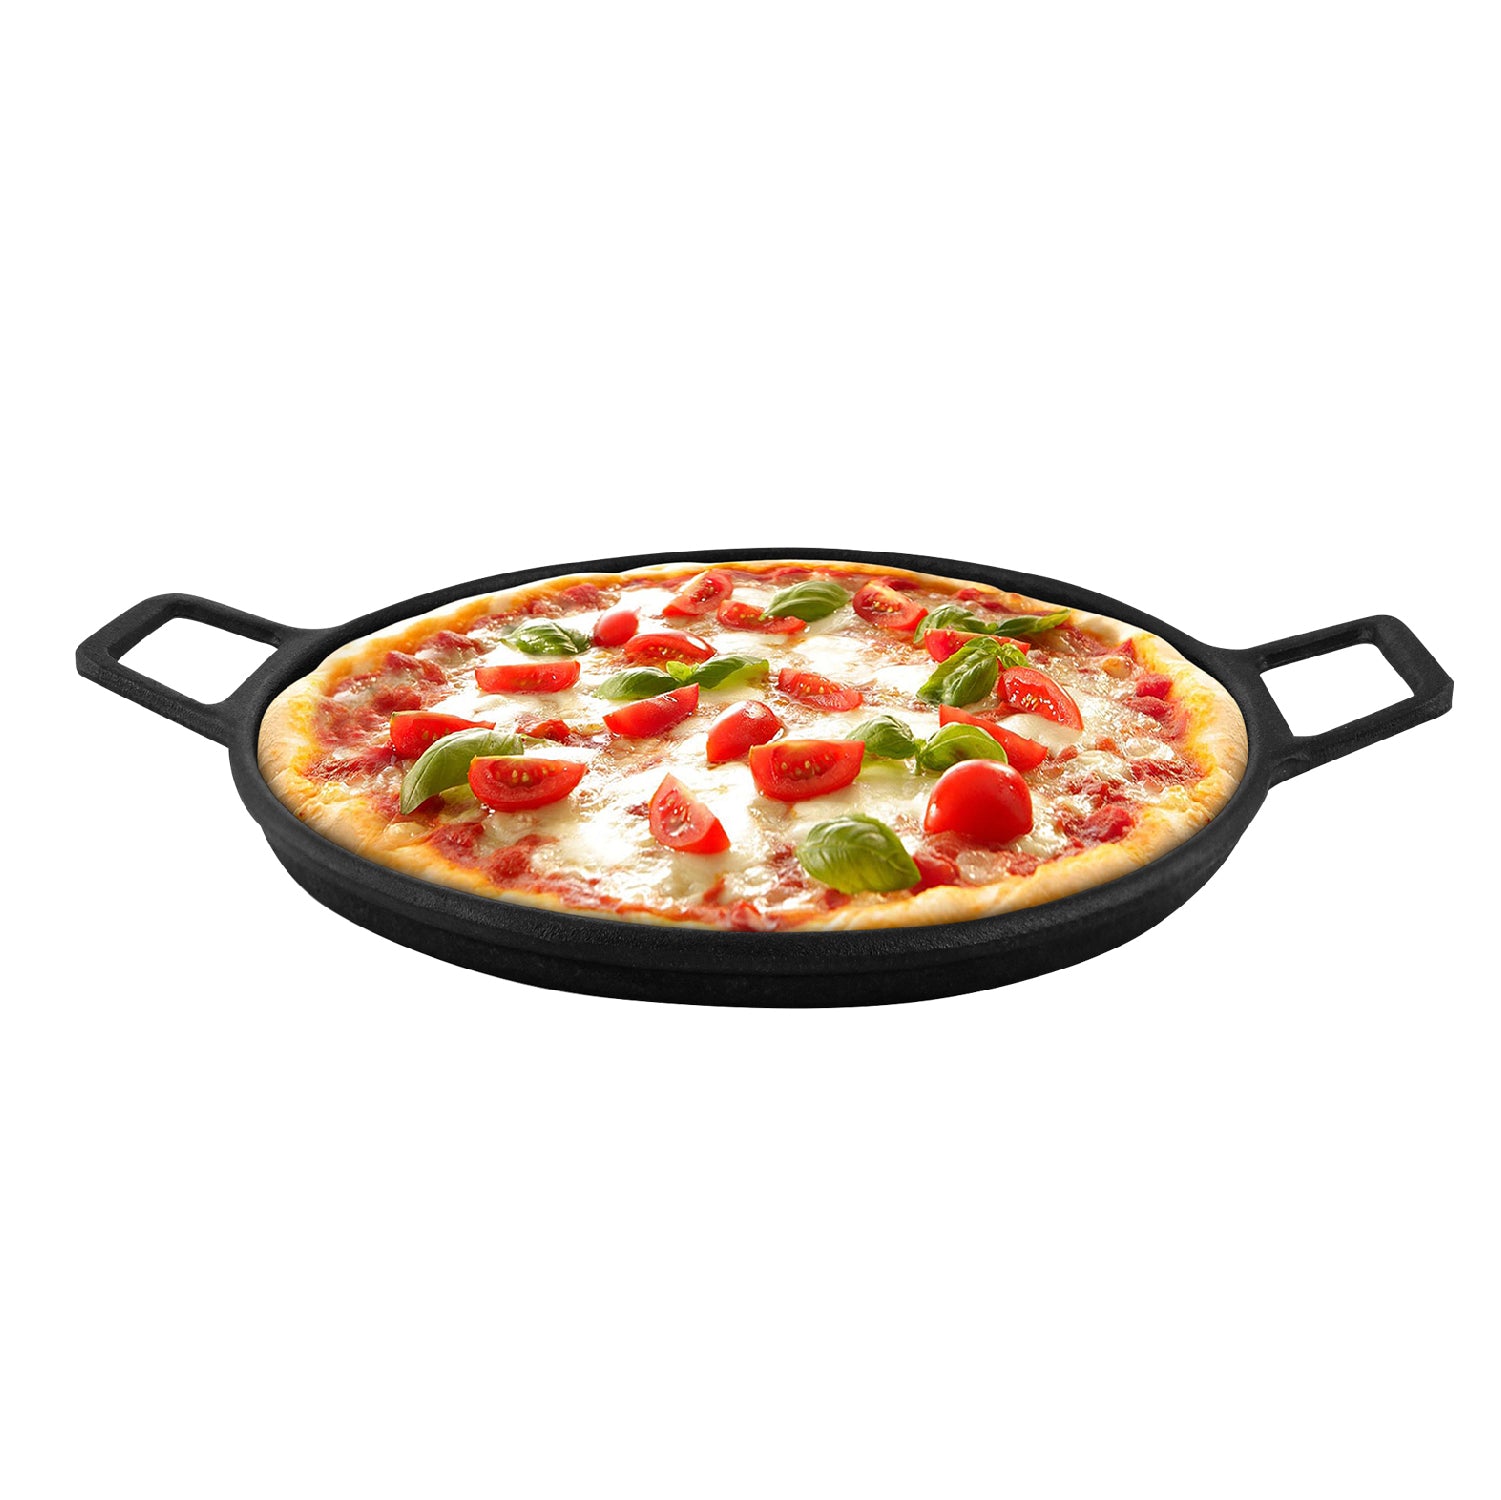 Plancha de hierro fundido para parrilla y cocina - Redonda (para pizza)